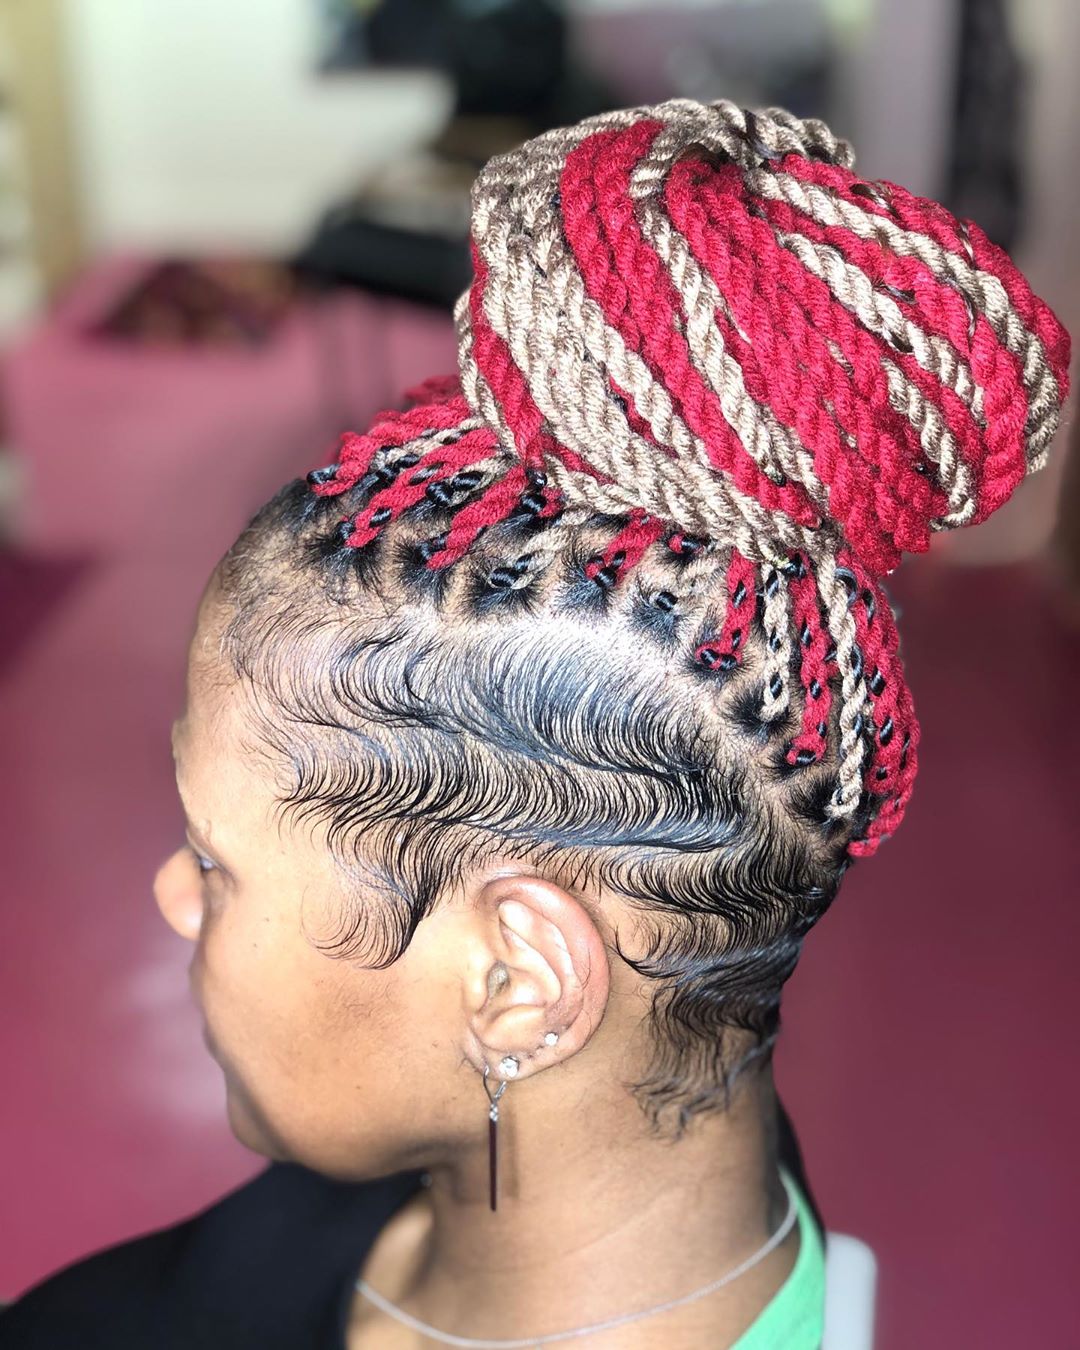 yarn-braid-hairstyles-3 | Zaineey's Blog